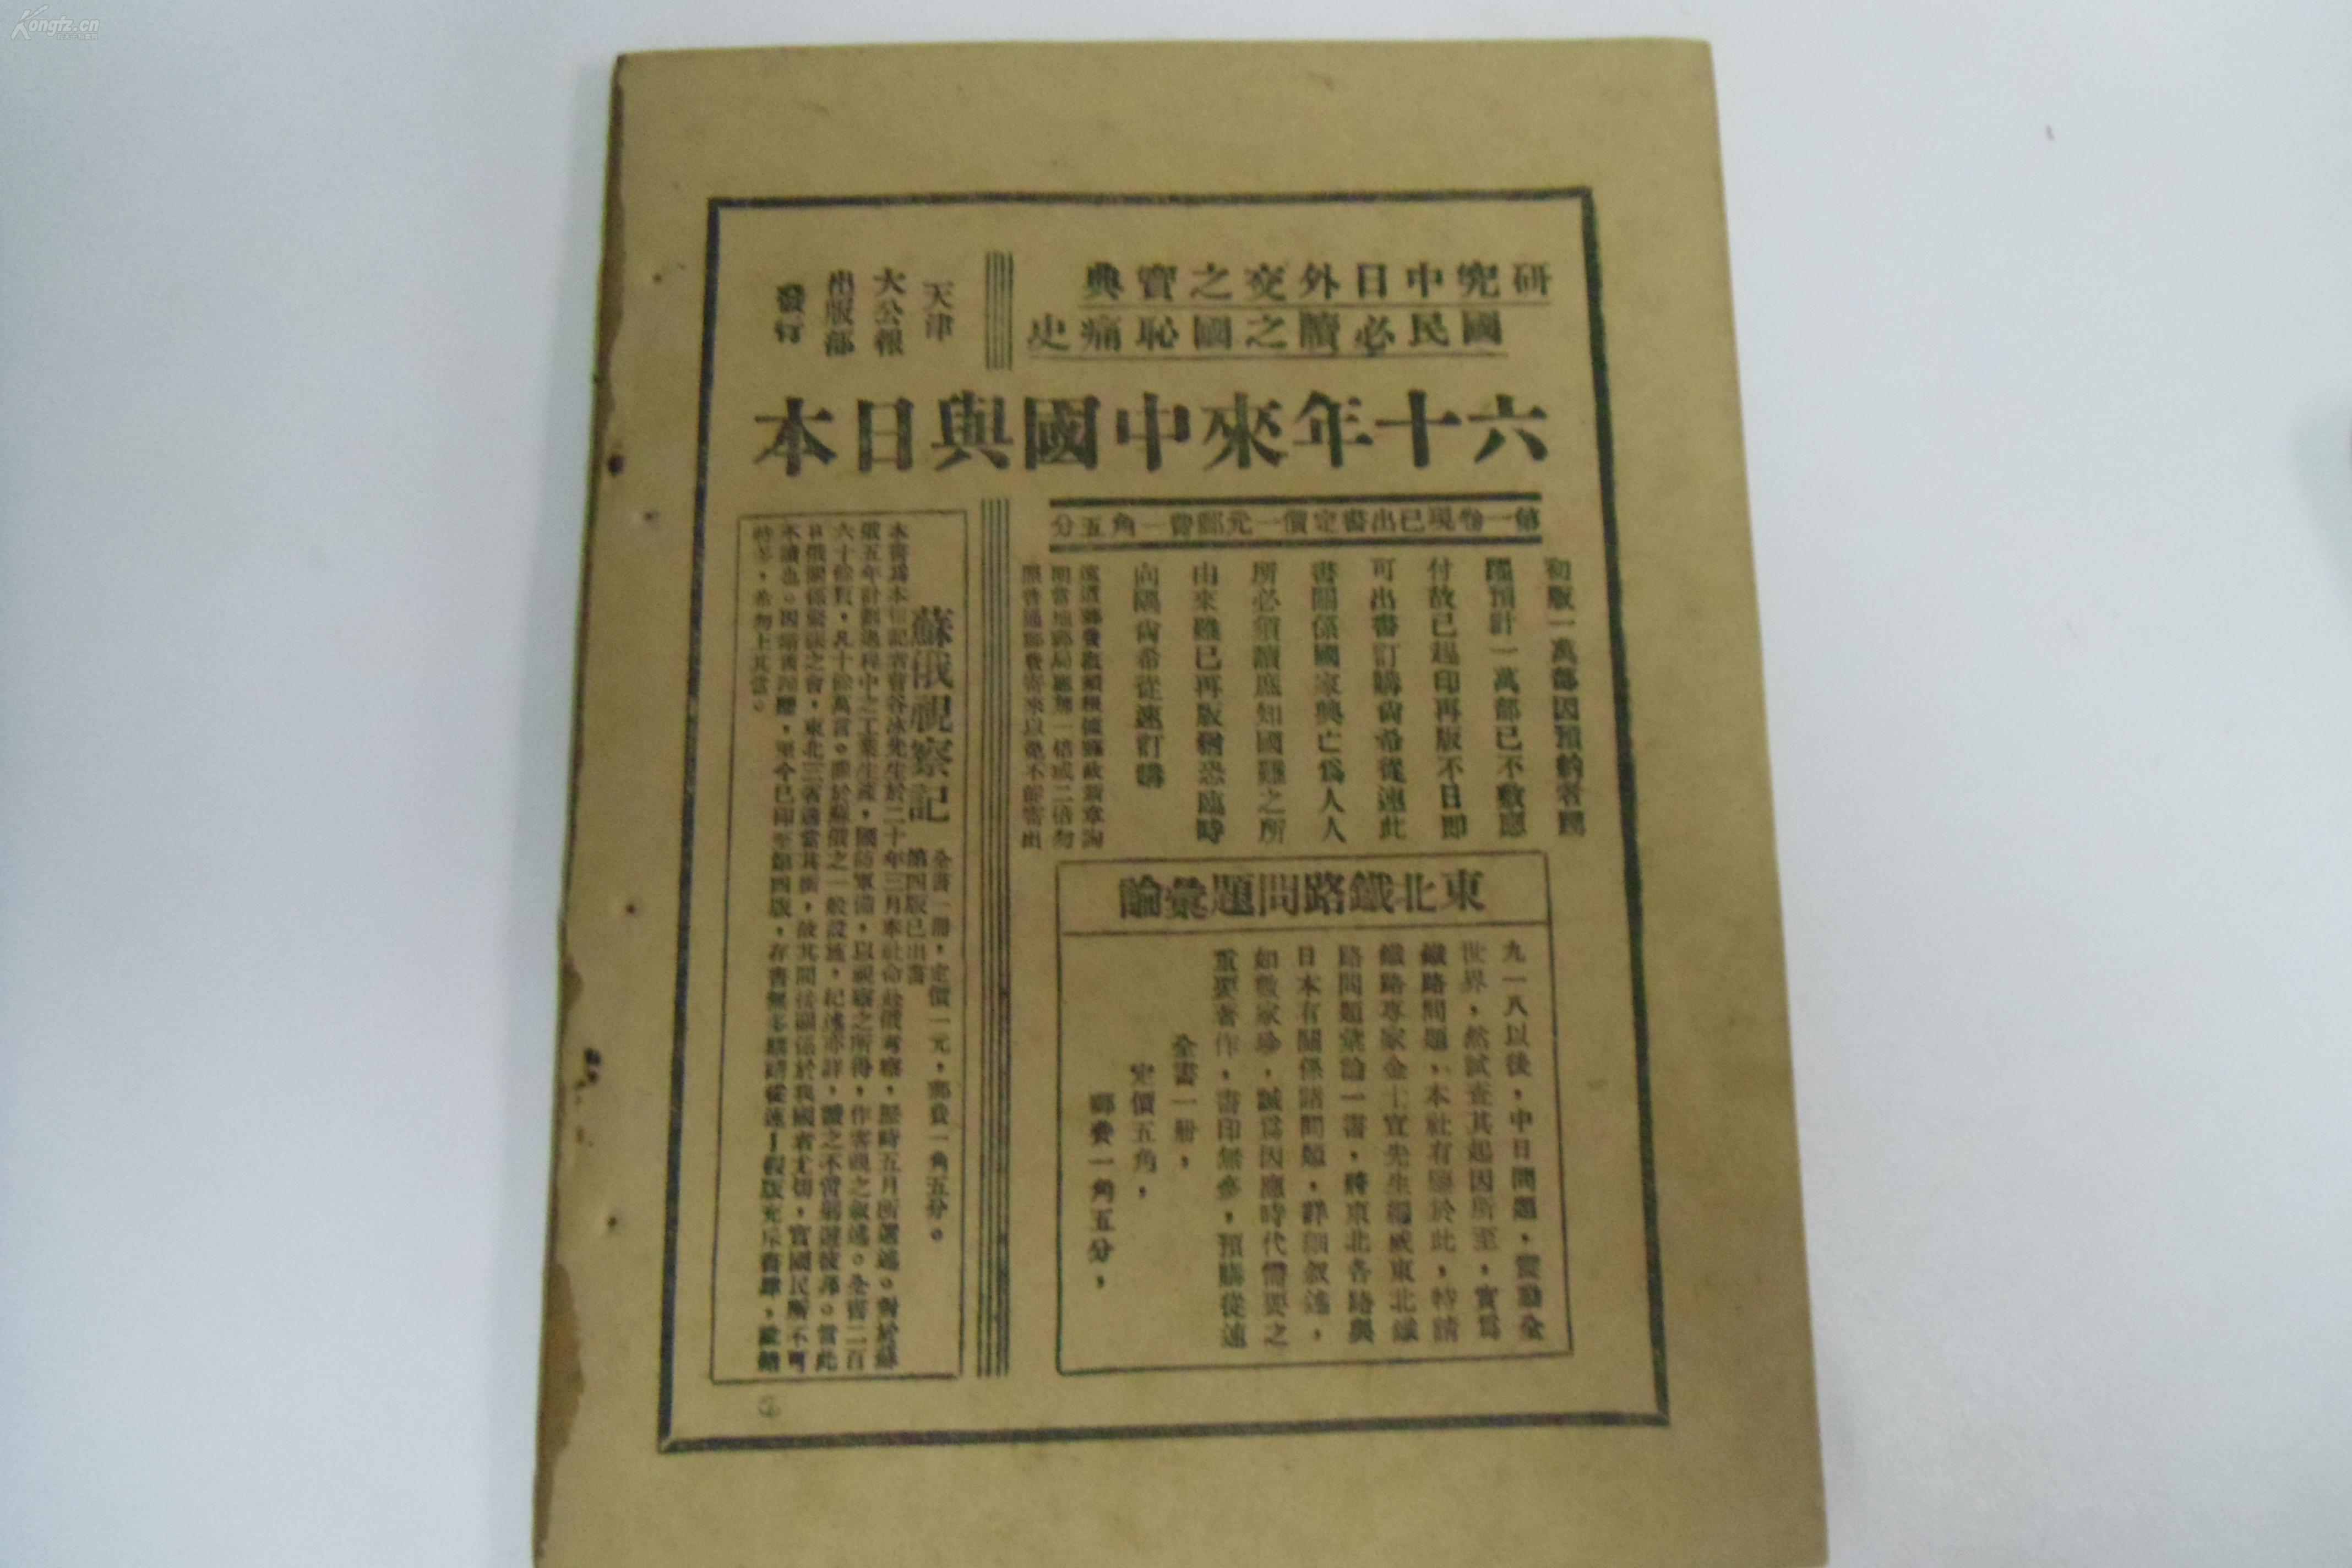 亚博:冯玉祥过去强烈反对中国依赖国联